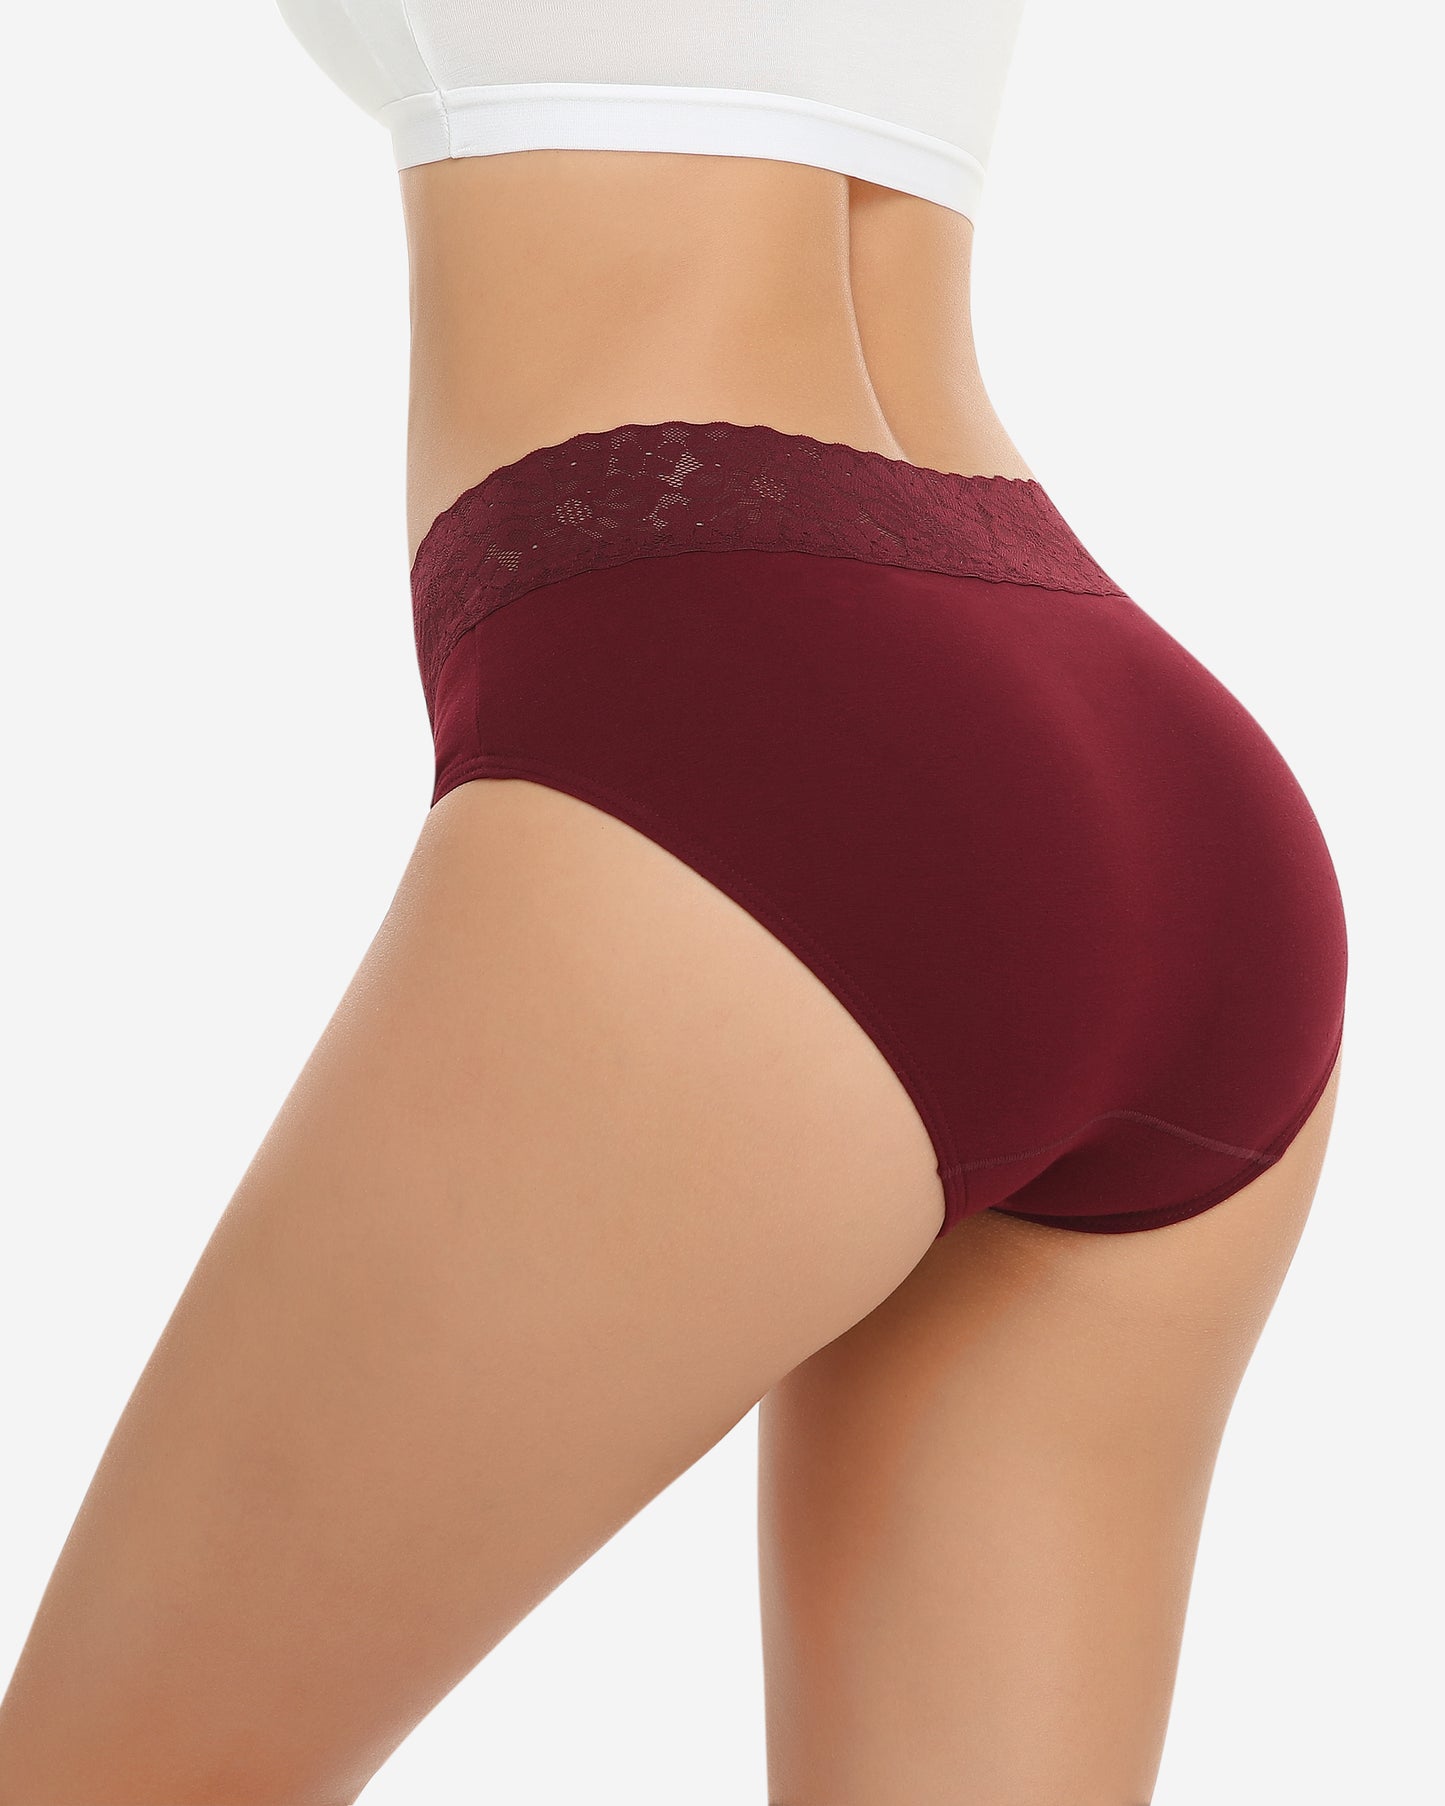 Wealurre Women's Underwear  Lace Briefs Cotton Hipster Skin-5-Pack